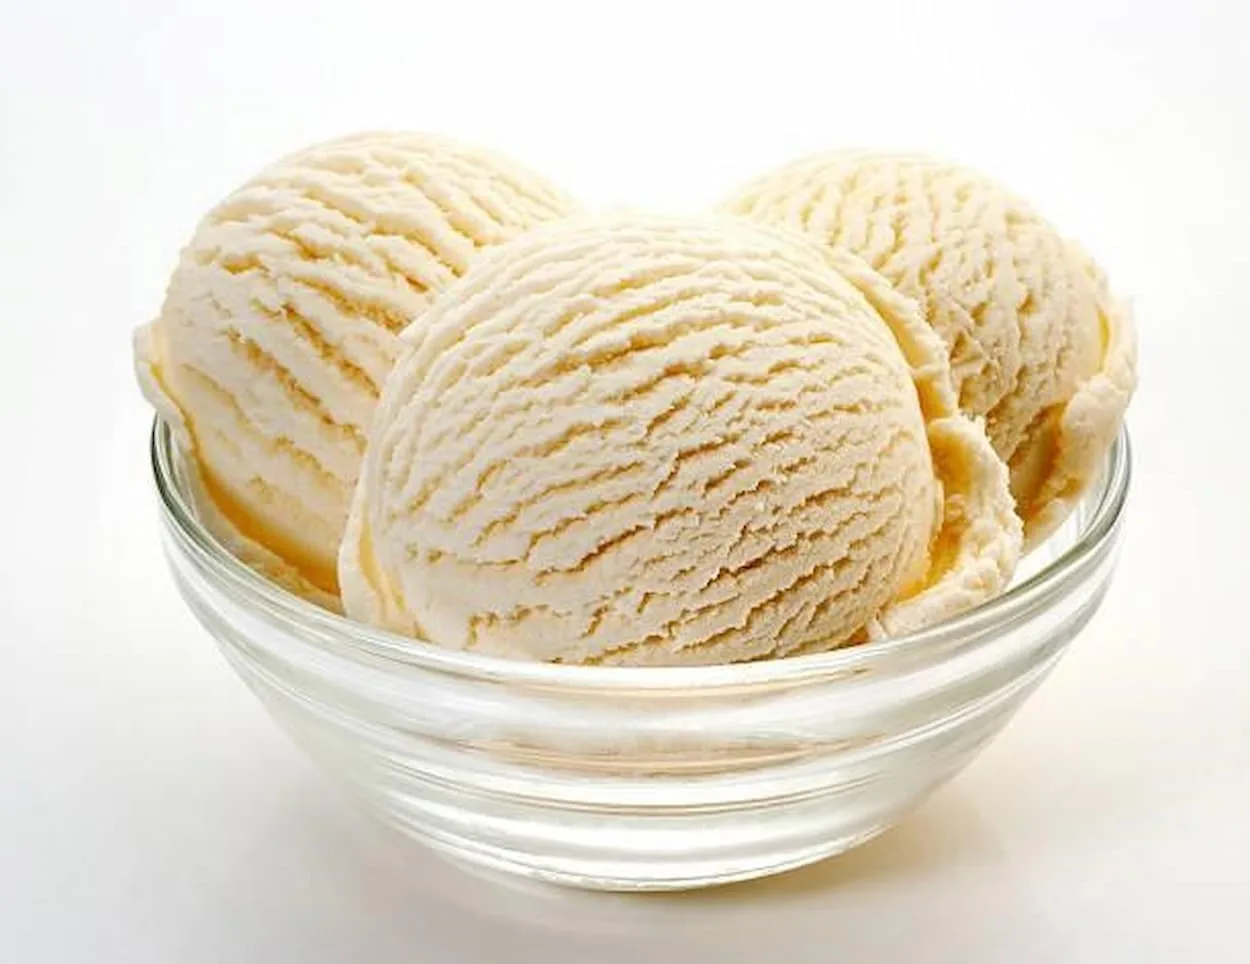  Akullore klasike me vanilje VS me fasule vanilje – Të gjitha ndryshimet